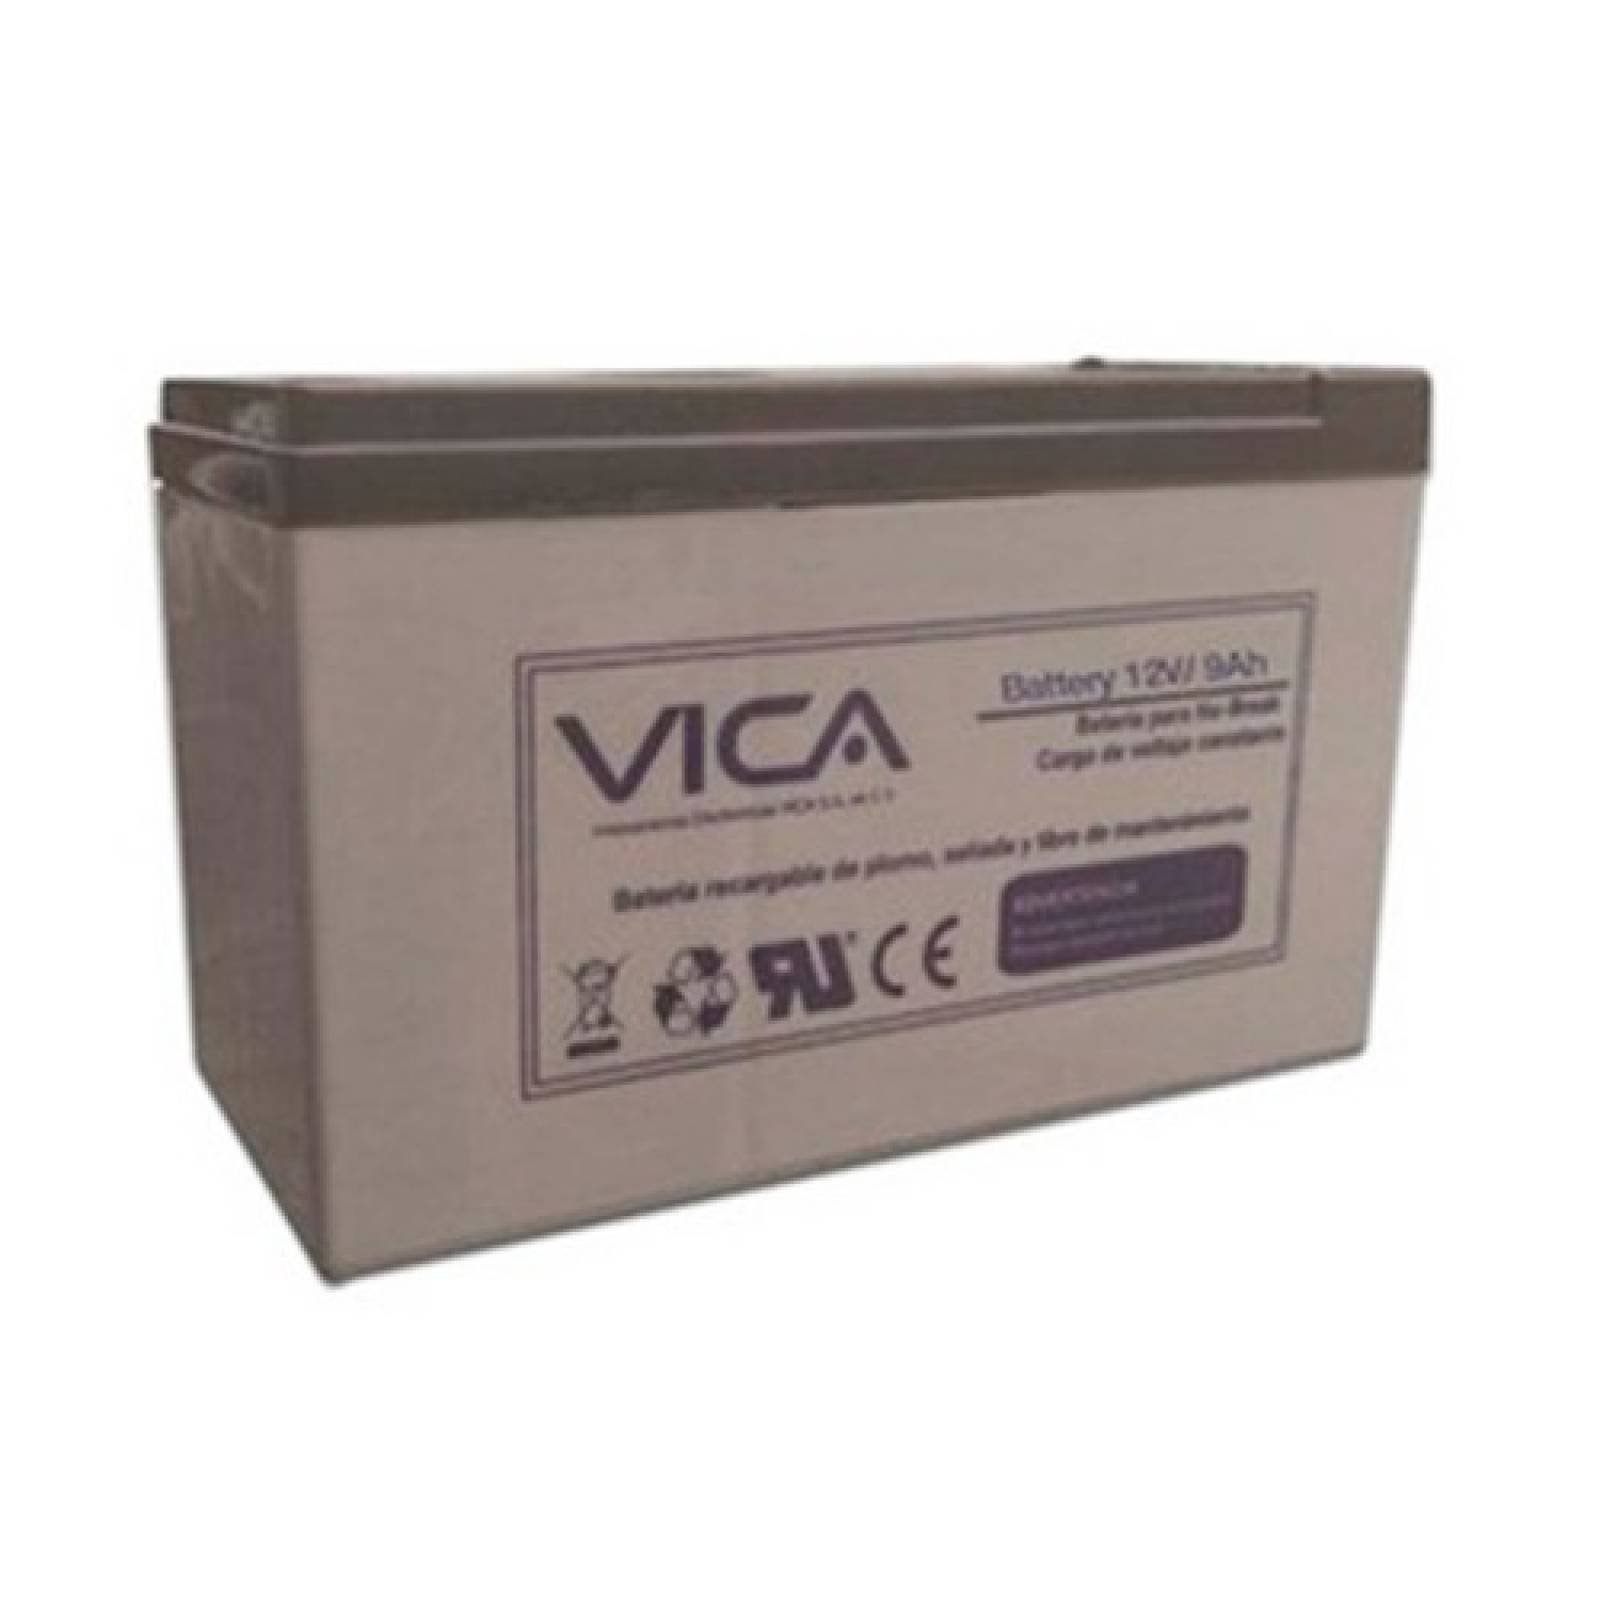 Bateria Reemplazo Voltaje 12 V - 9A Vica